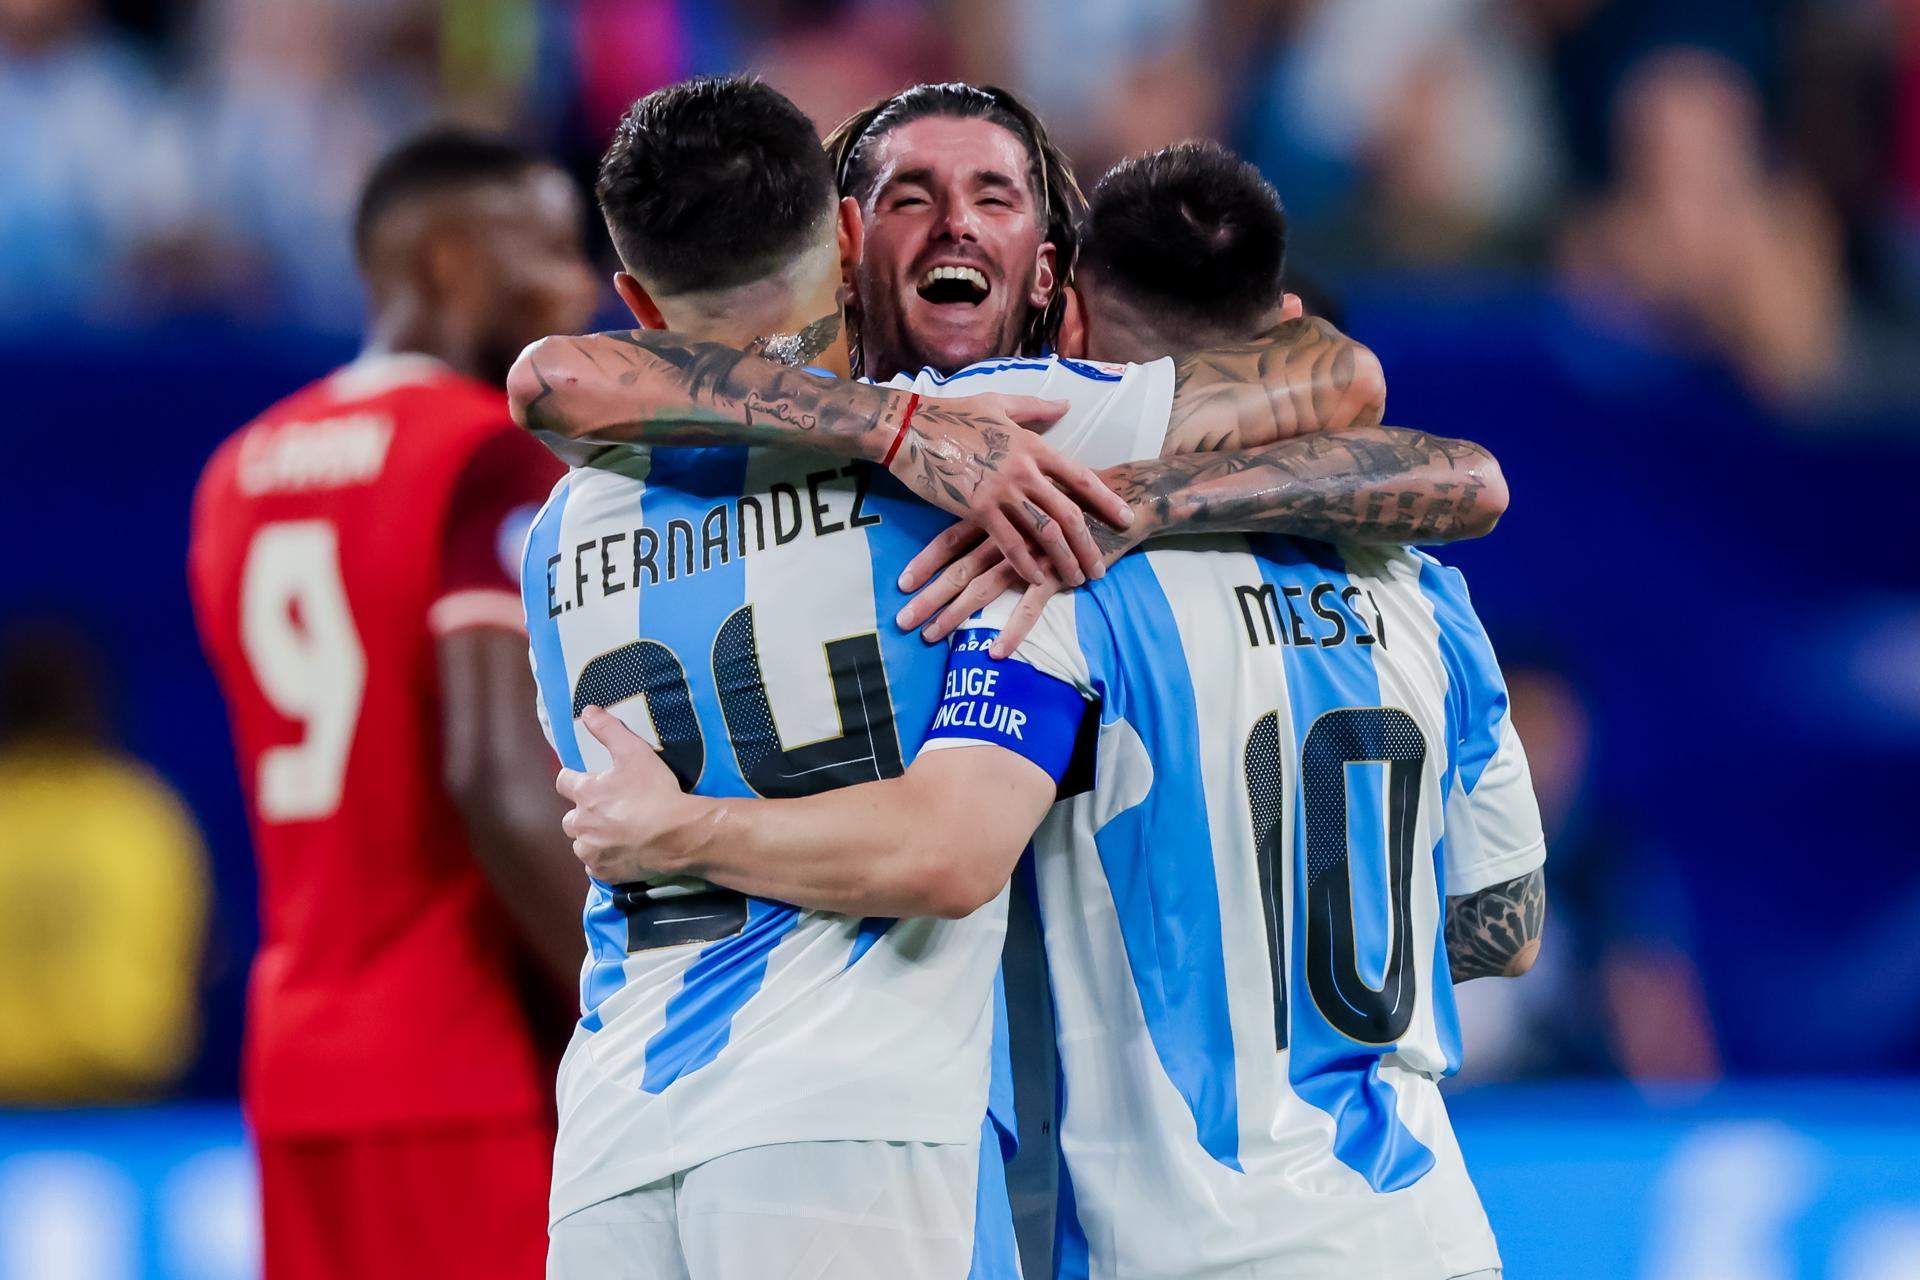 La Argentina de Leo Messi vuelve a la final de la Copa América tras superar a Canadá